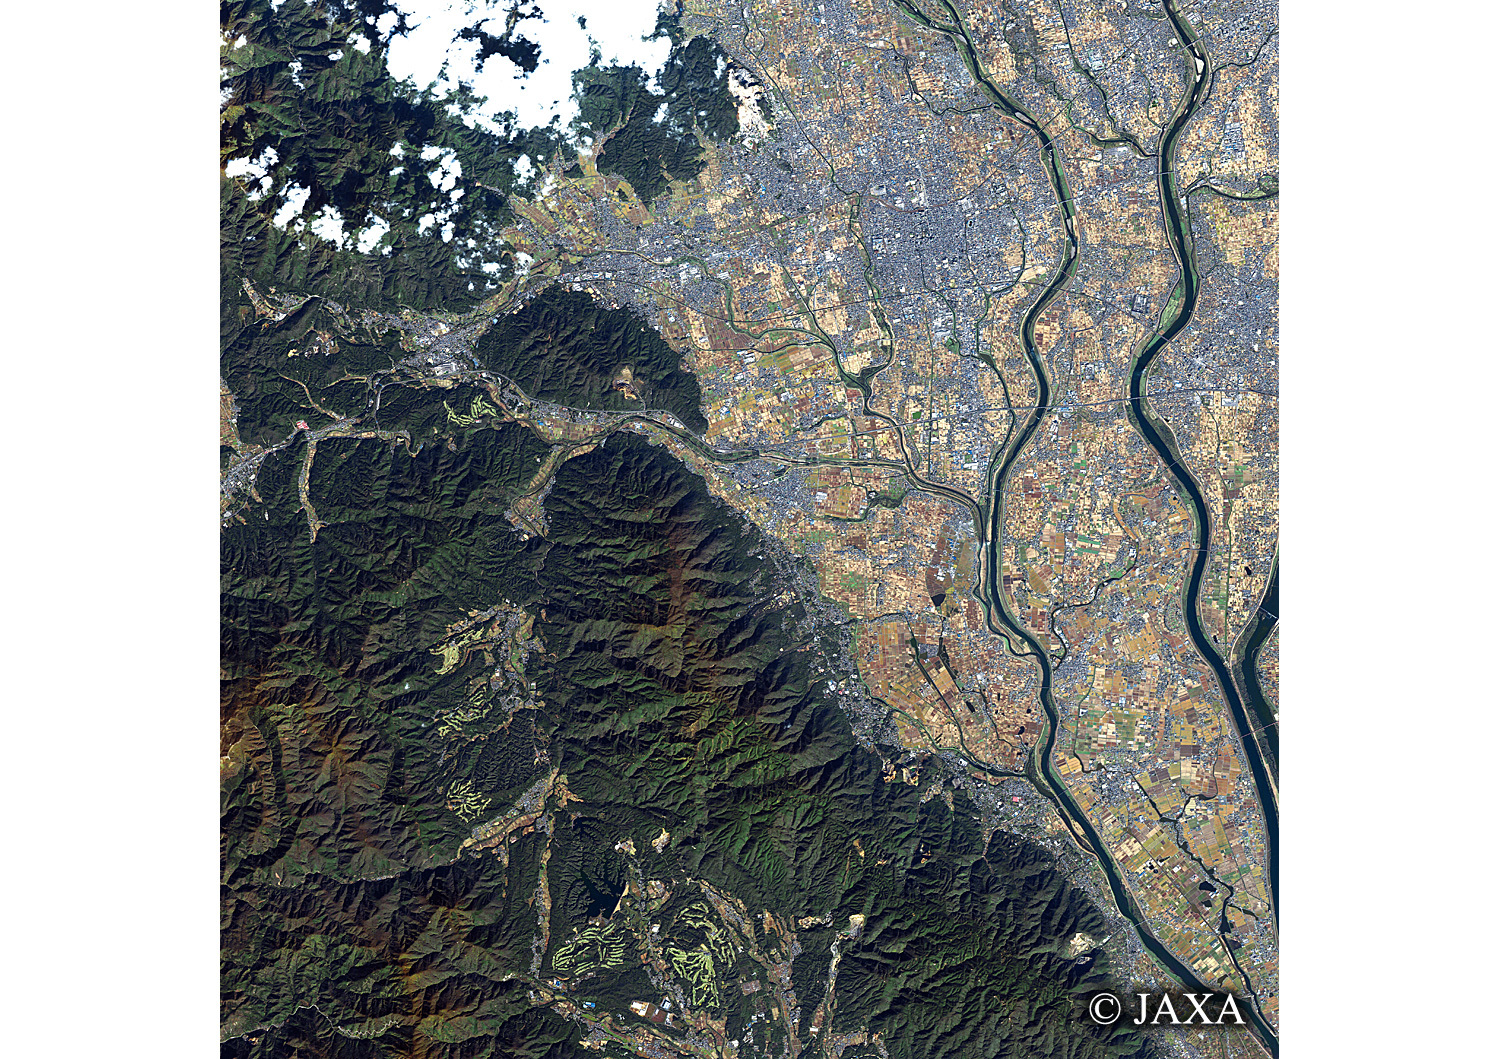 だいちから見た日本の都市 大垣市:衛星画像